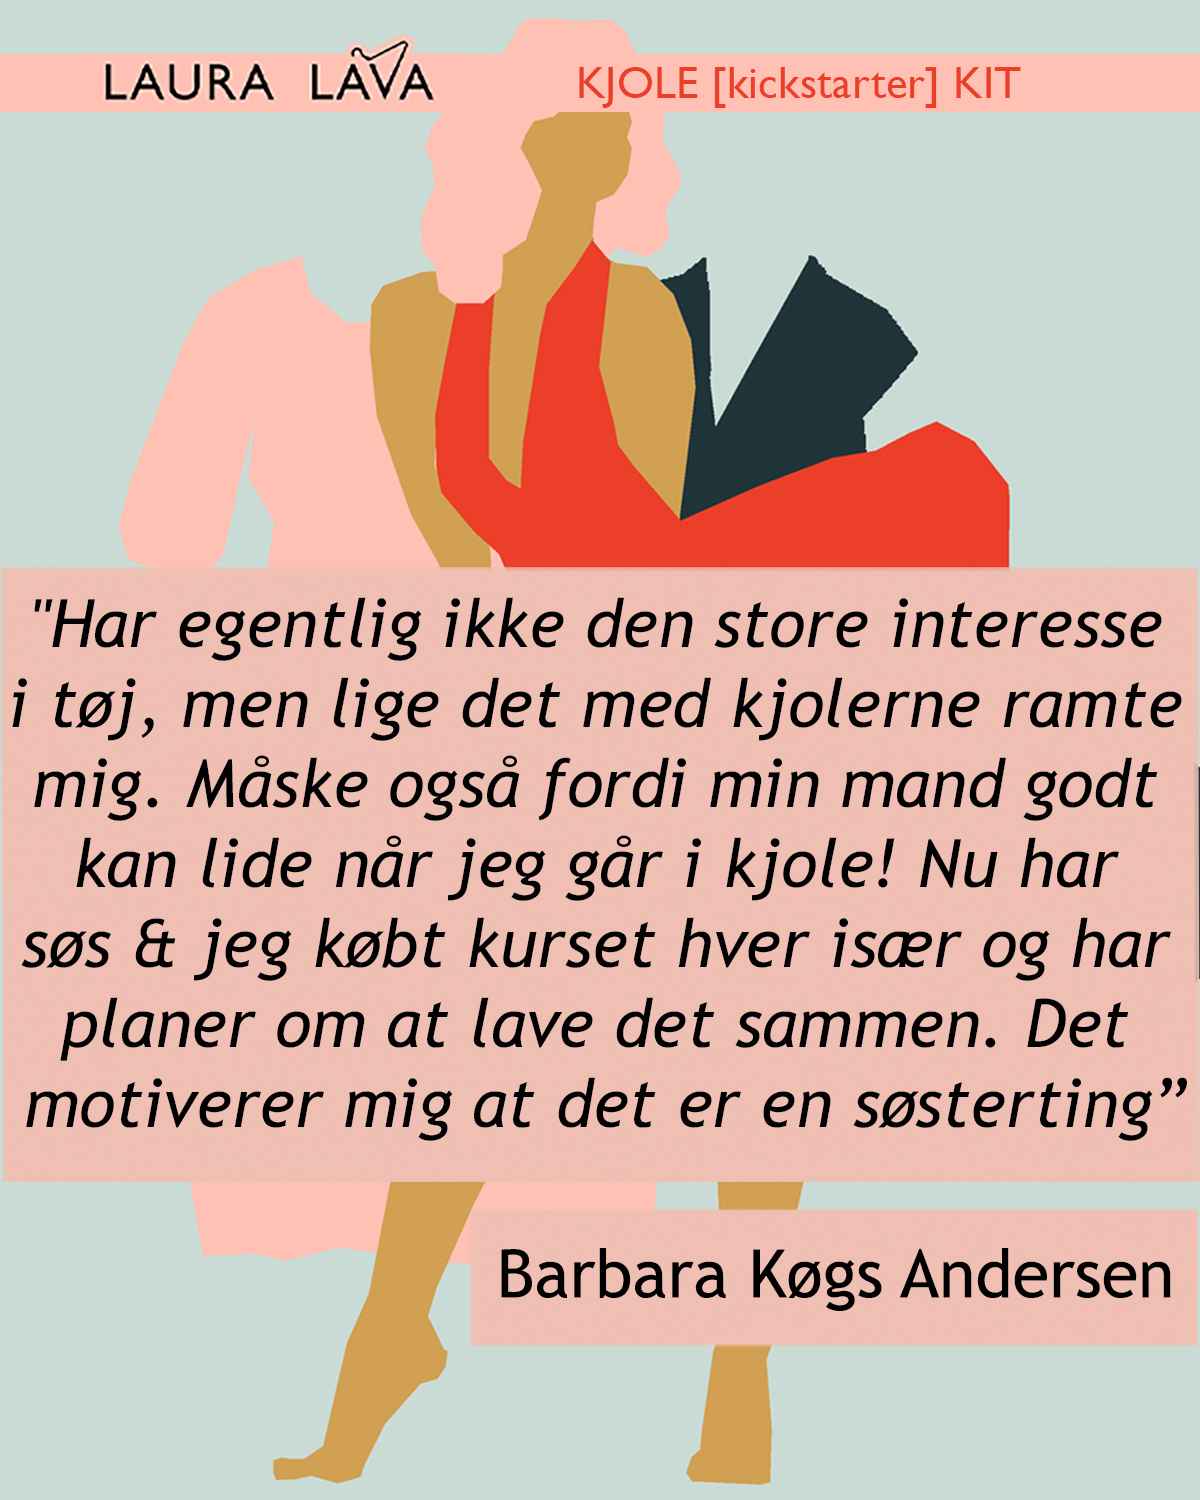 1080 x 1350 4 til 5 Kjole Kickstarter citat Barbara kopier